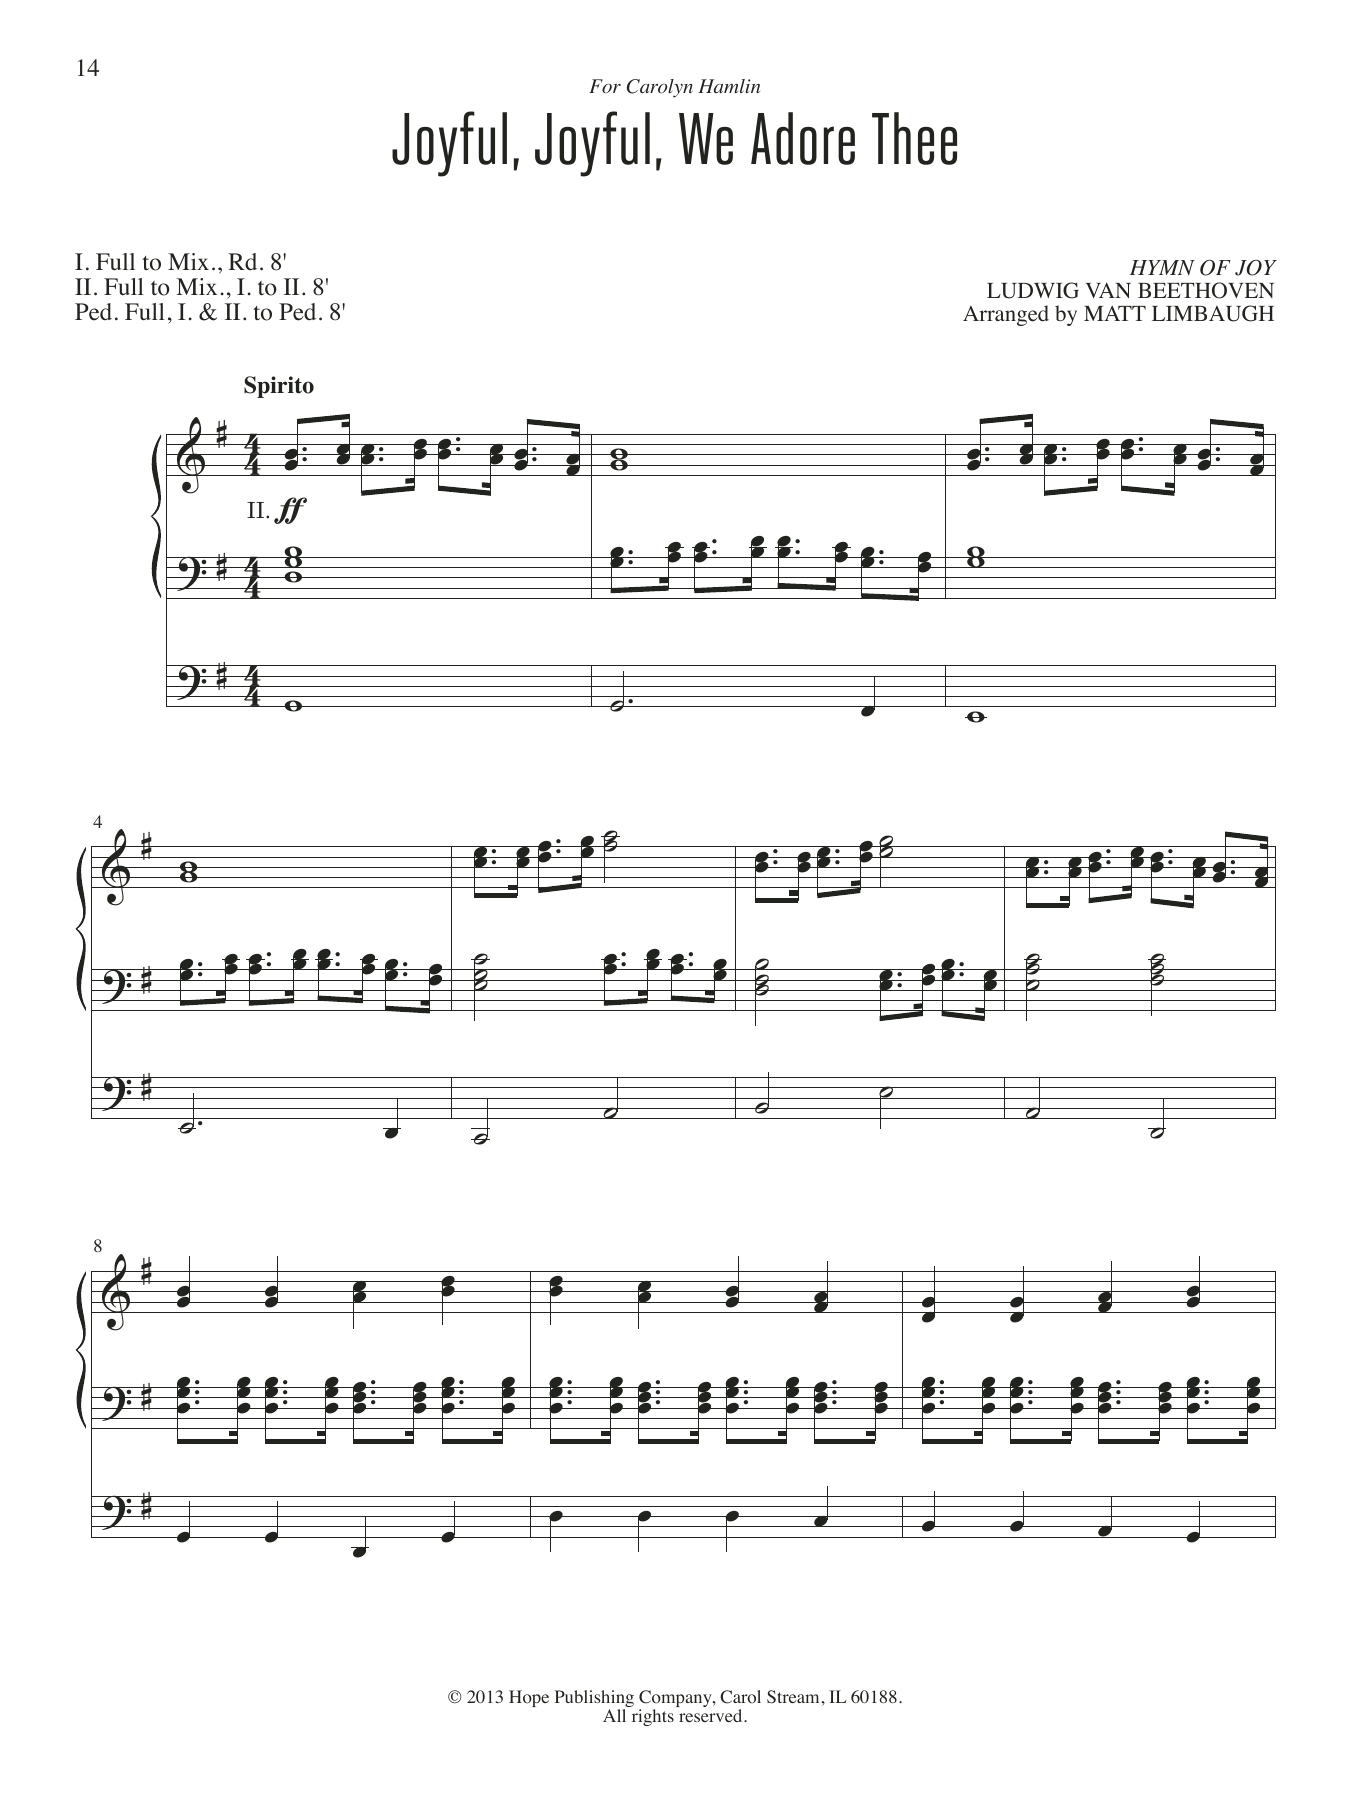 Matt Limbaugh Joyful, Joyful, We Adore Thee sheet music notes and chords arranged for Organ